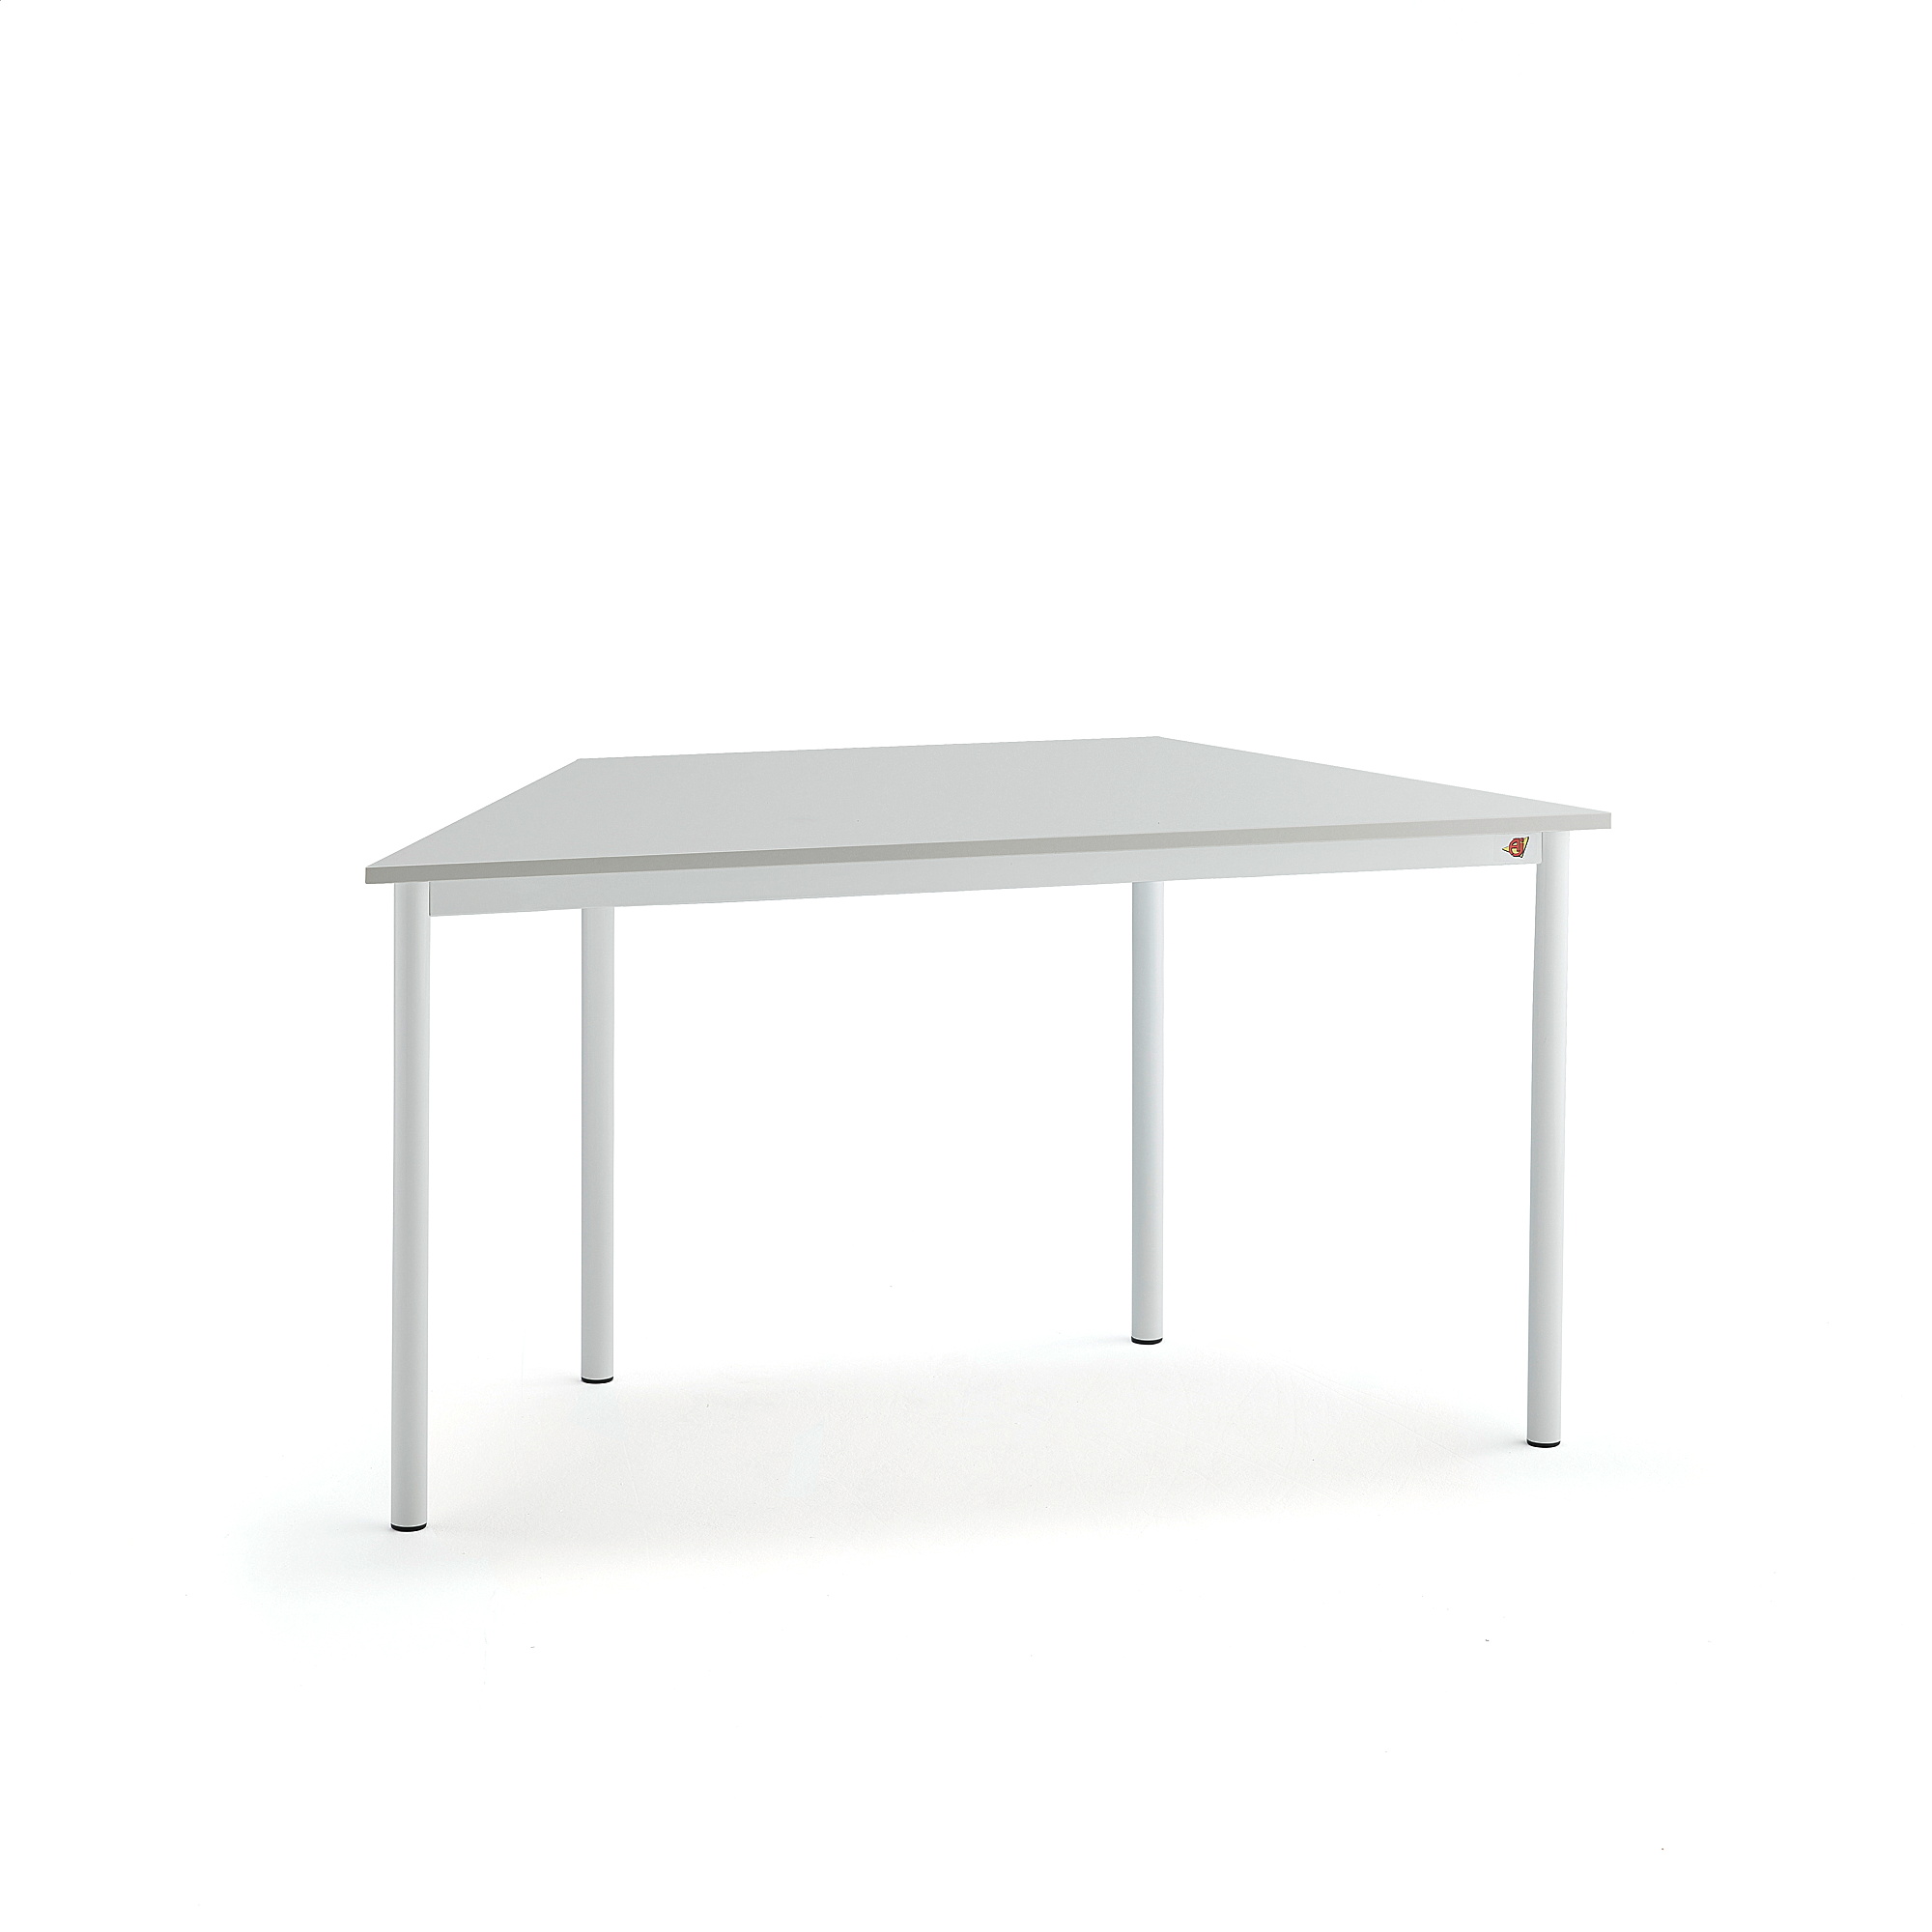 Stůl BORÅS TRAPETS, 1200x600x720 mm, bílé nohy, HPL deska, šedá